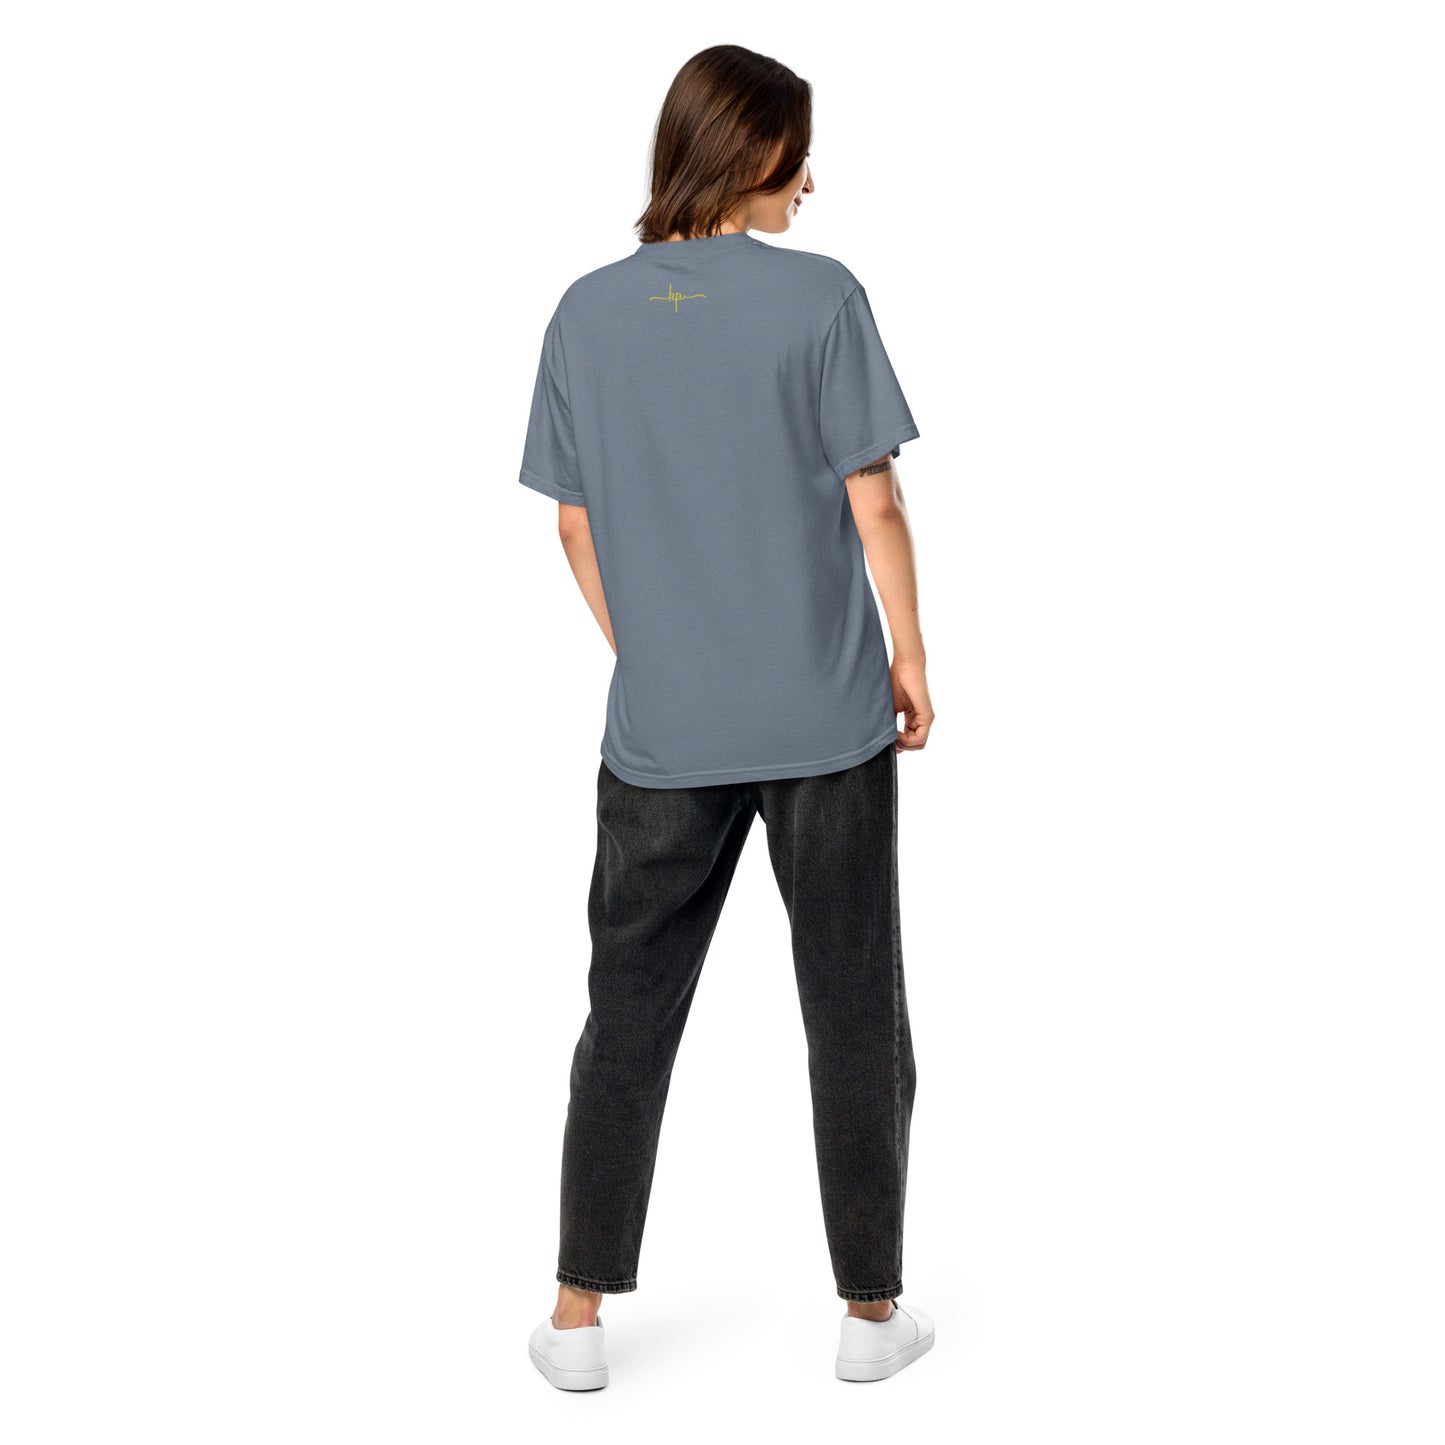 .Garment-dyed Heavyweight Unisex T-shirt